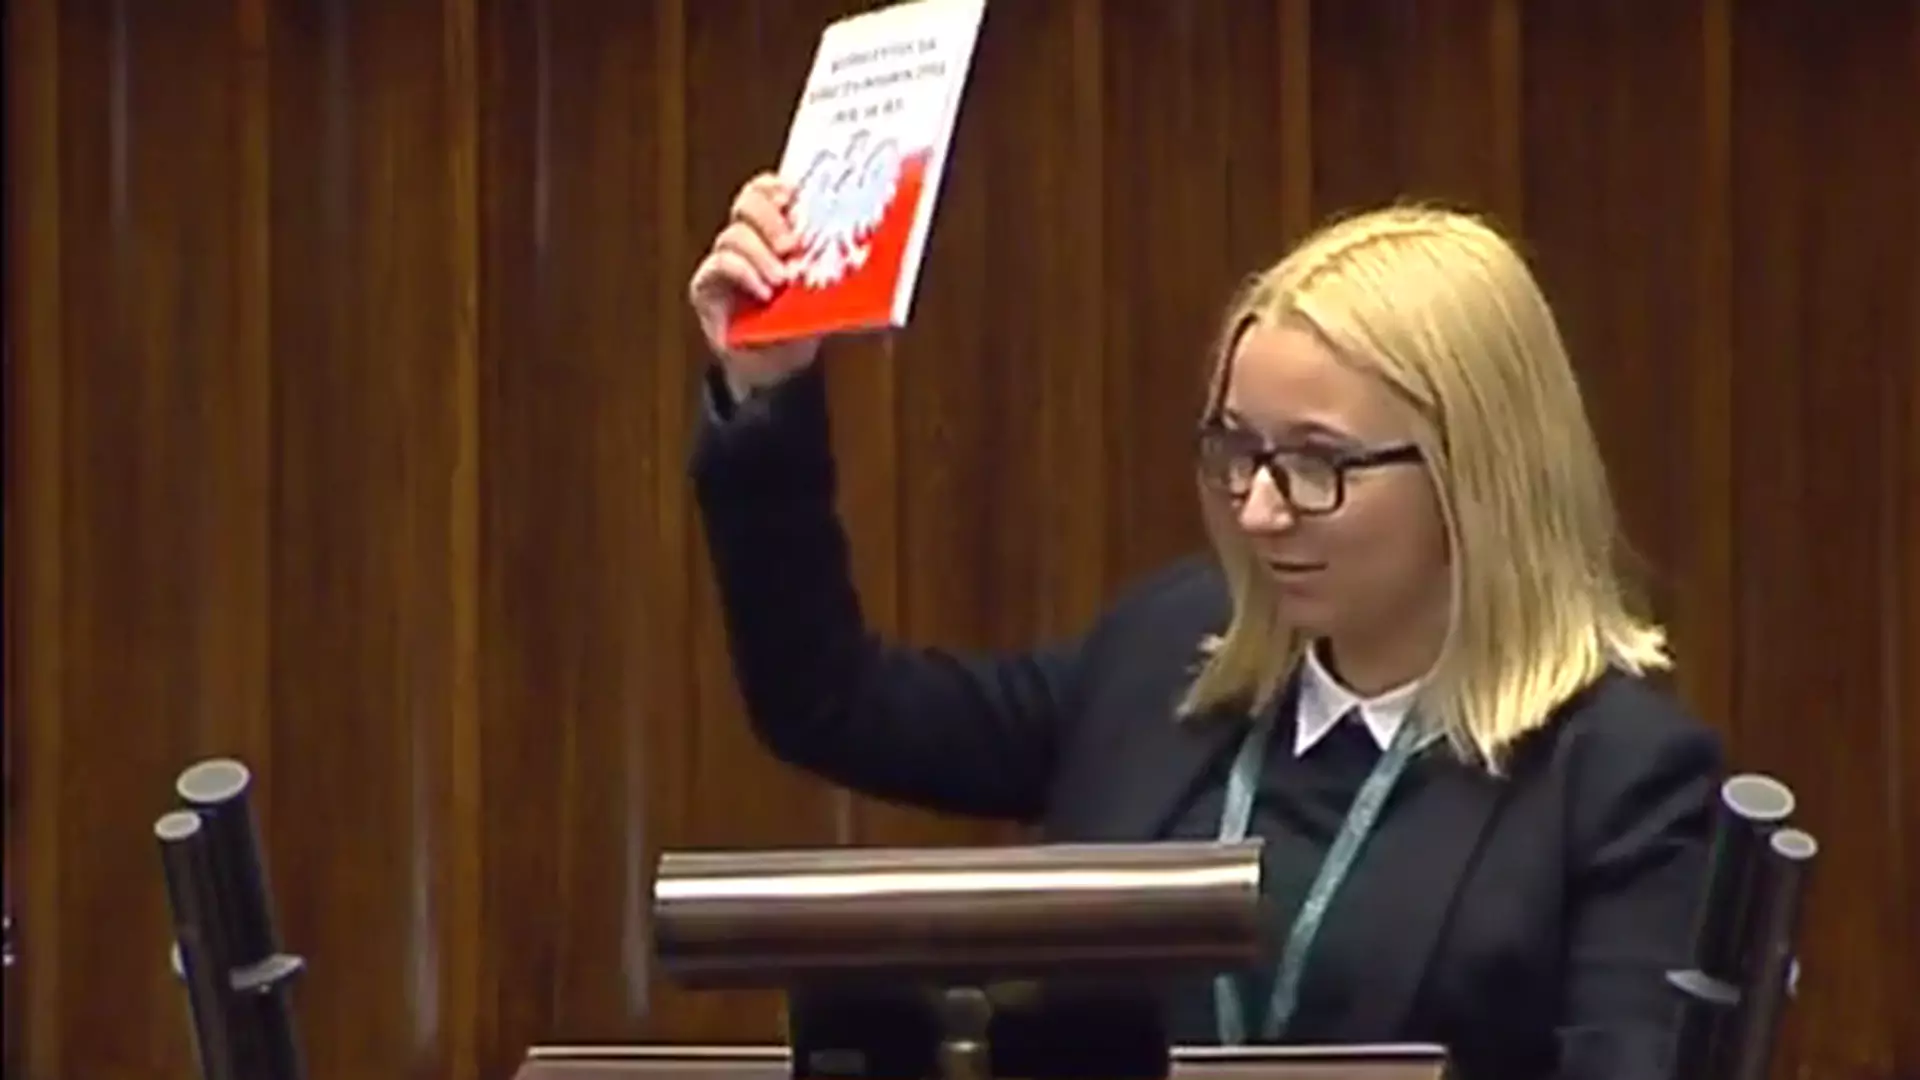 Sejmowe wystąpienie nastolatki hitem internetu. Przysłuchujący się politycy musieli mieć nietęgie miny